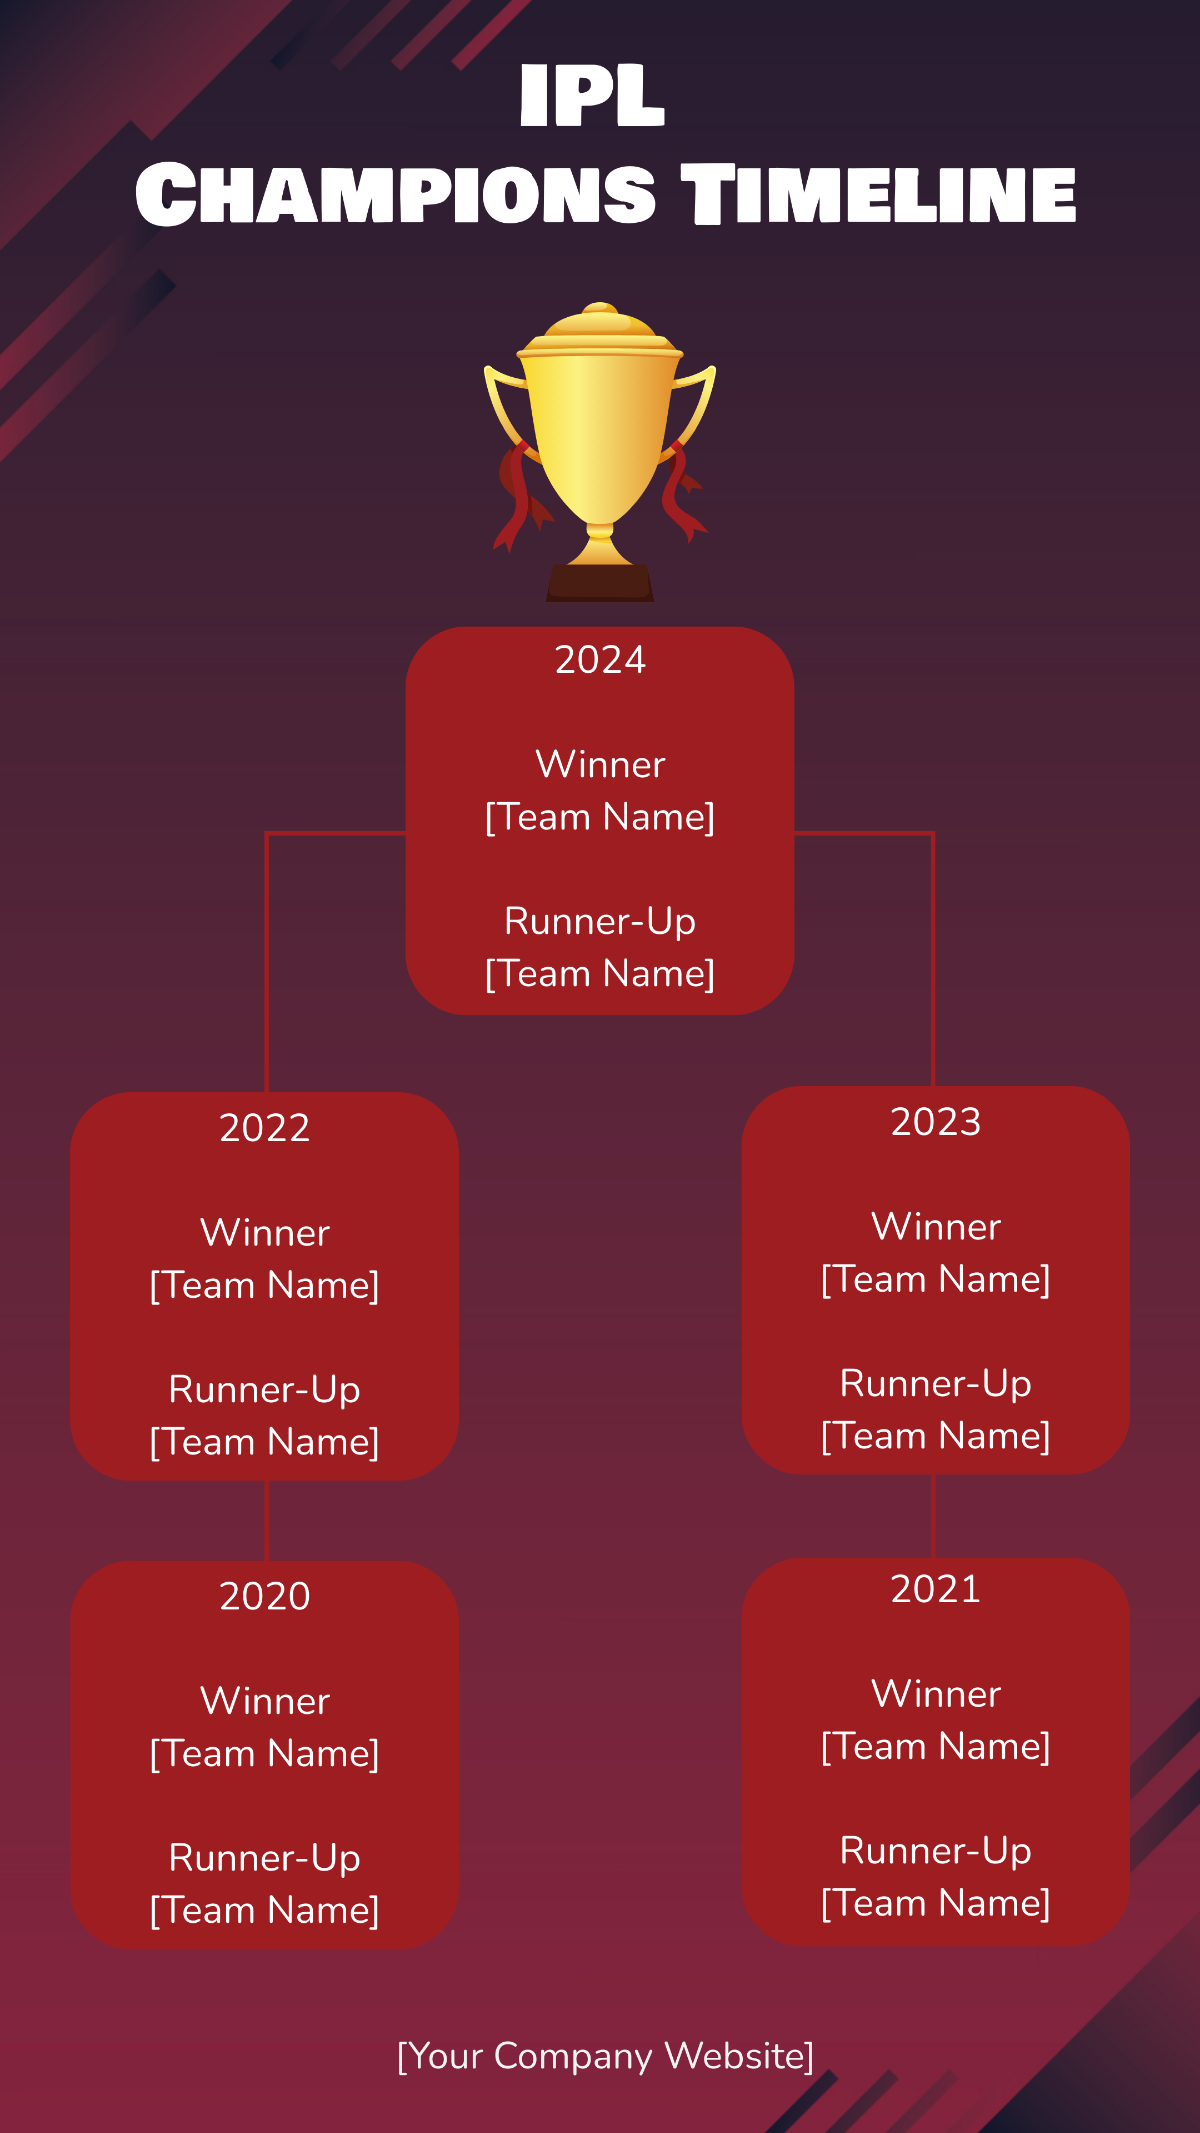 IPL Timeline 2024